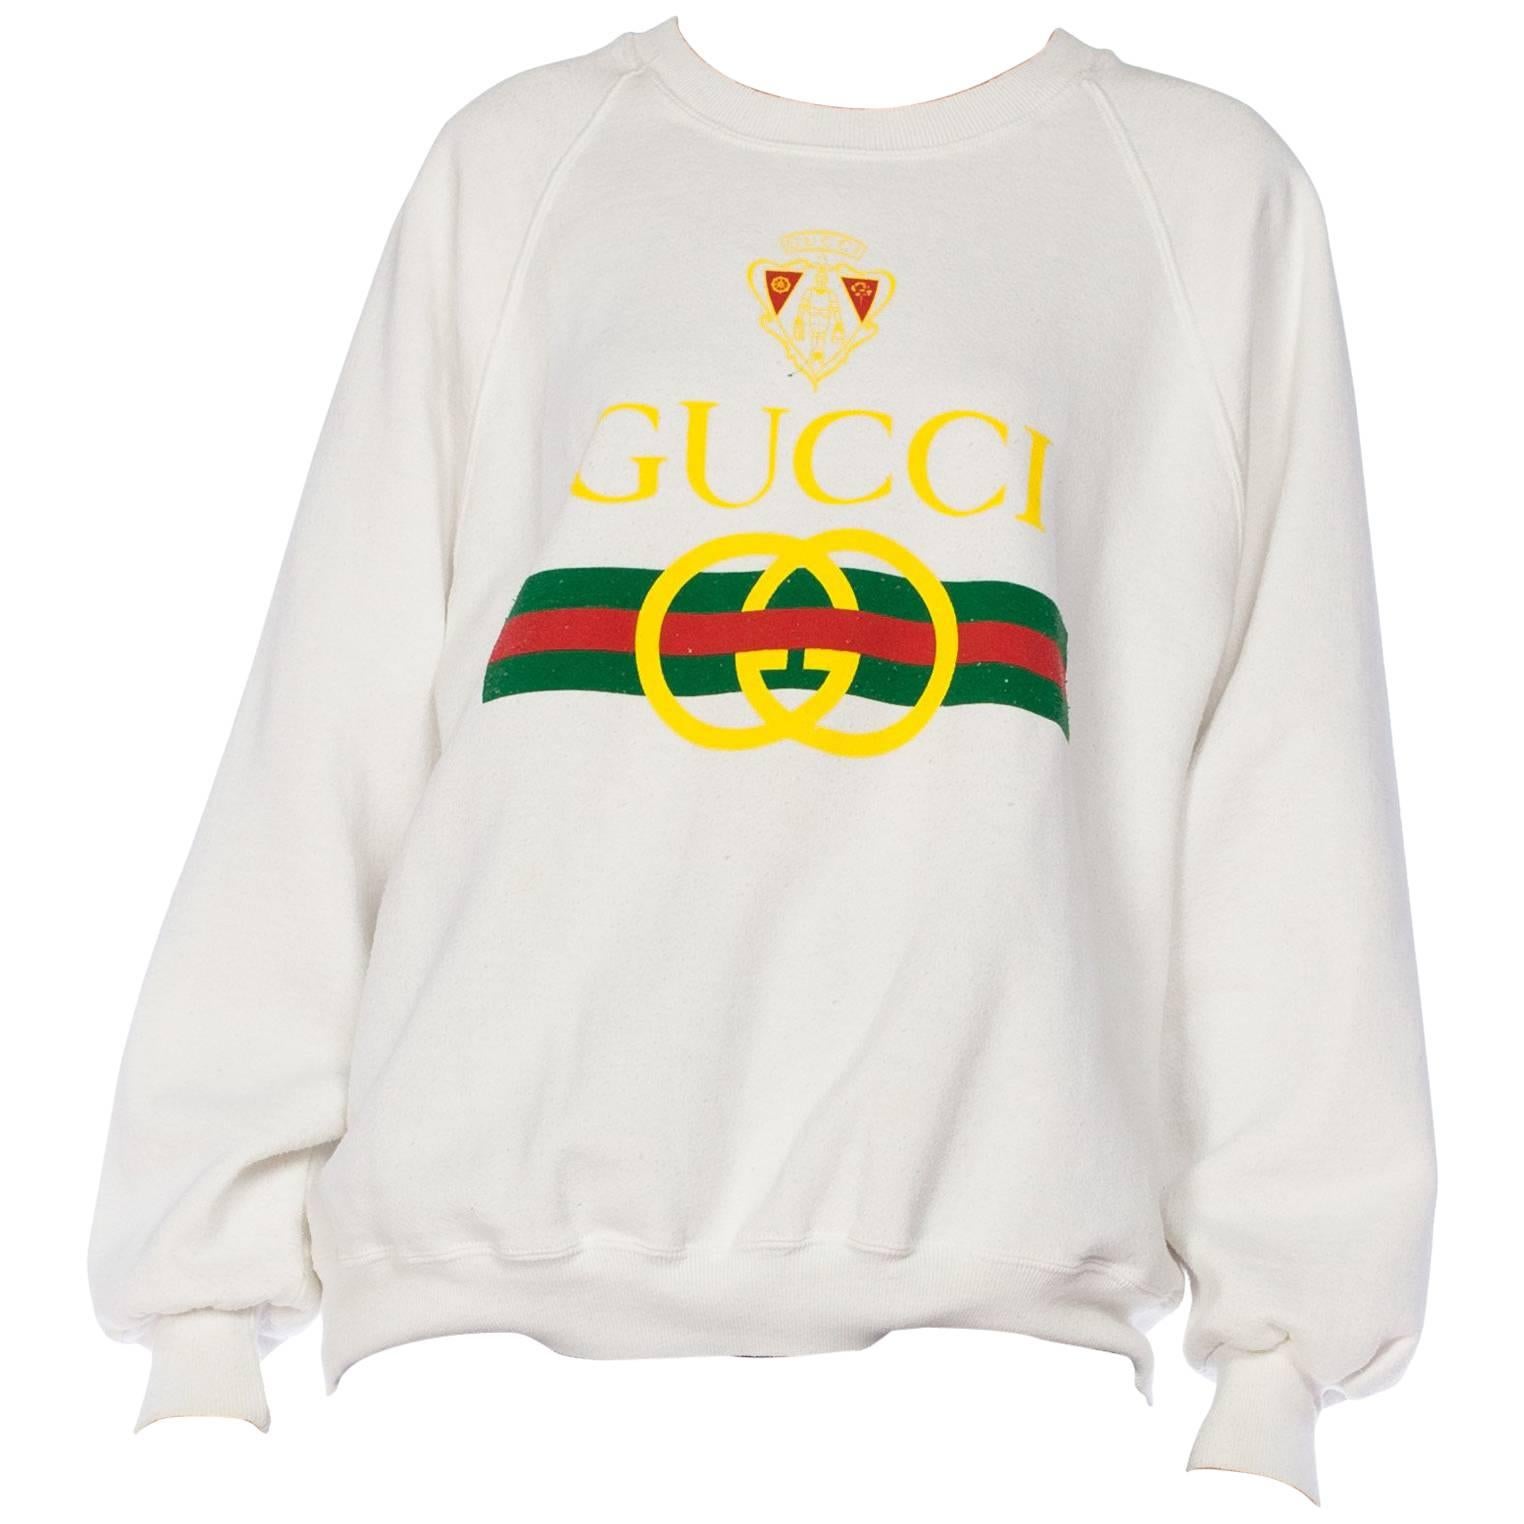 Bootleg Gucci - For Sale On 1Stdibs | Gucci Bootleg, Bootleg Gucci  Sweatshirt, Bootleg Gucci Shirt